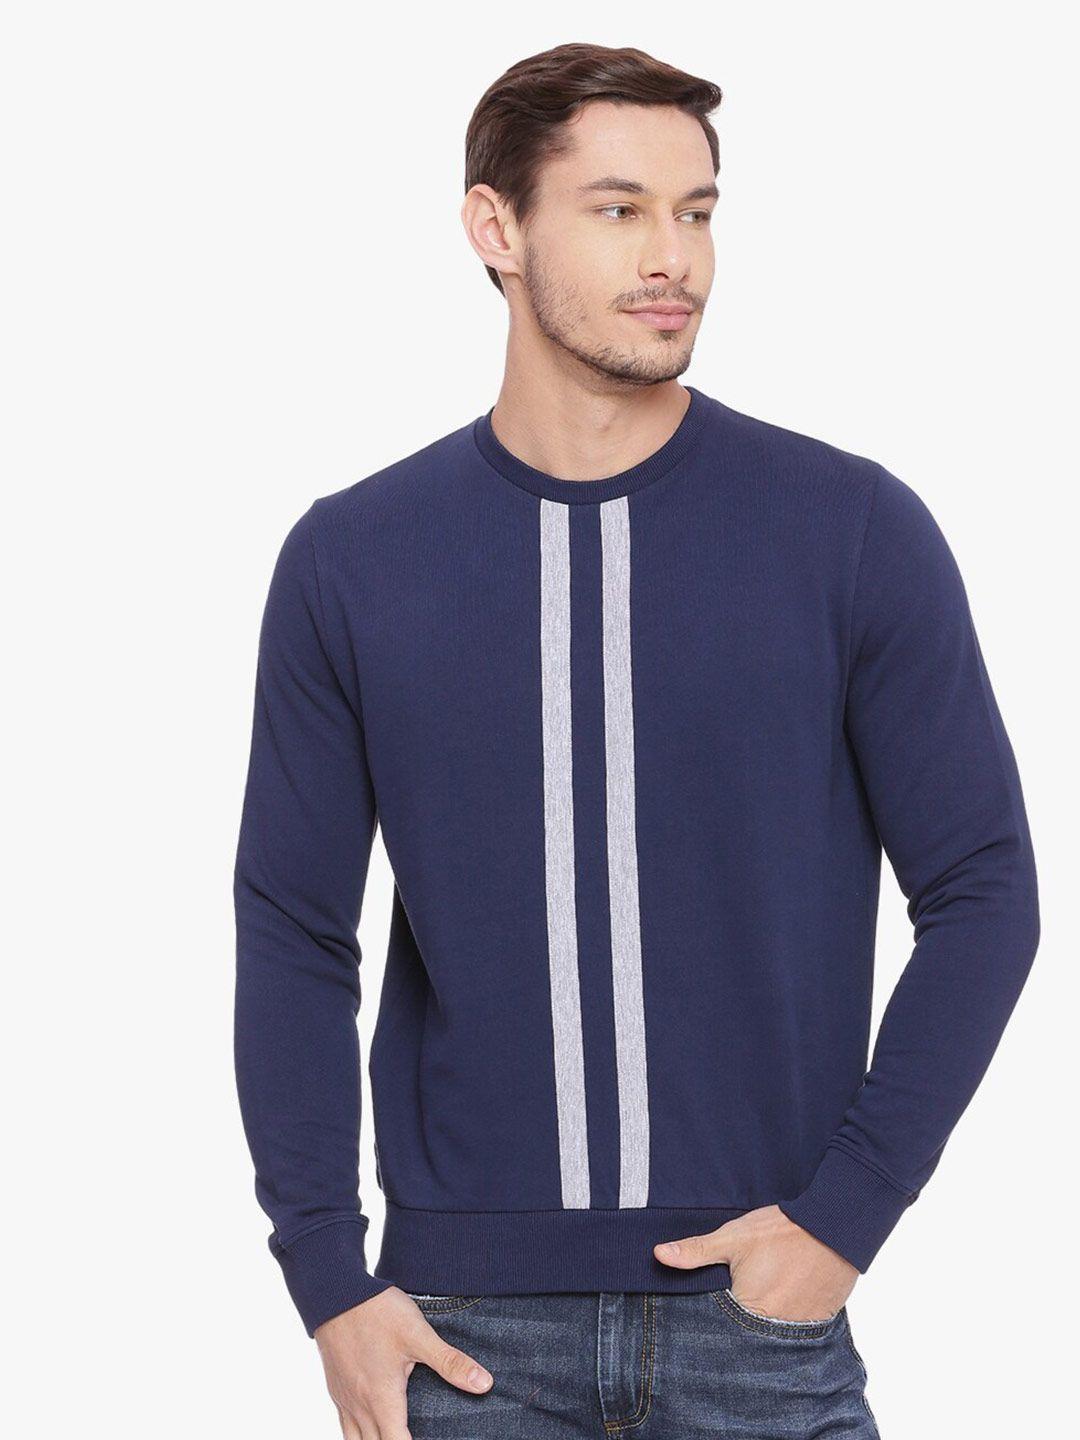 basics men navy blue & grey striped pullover